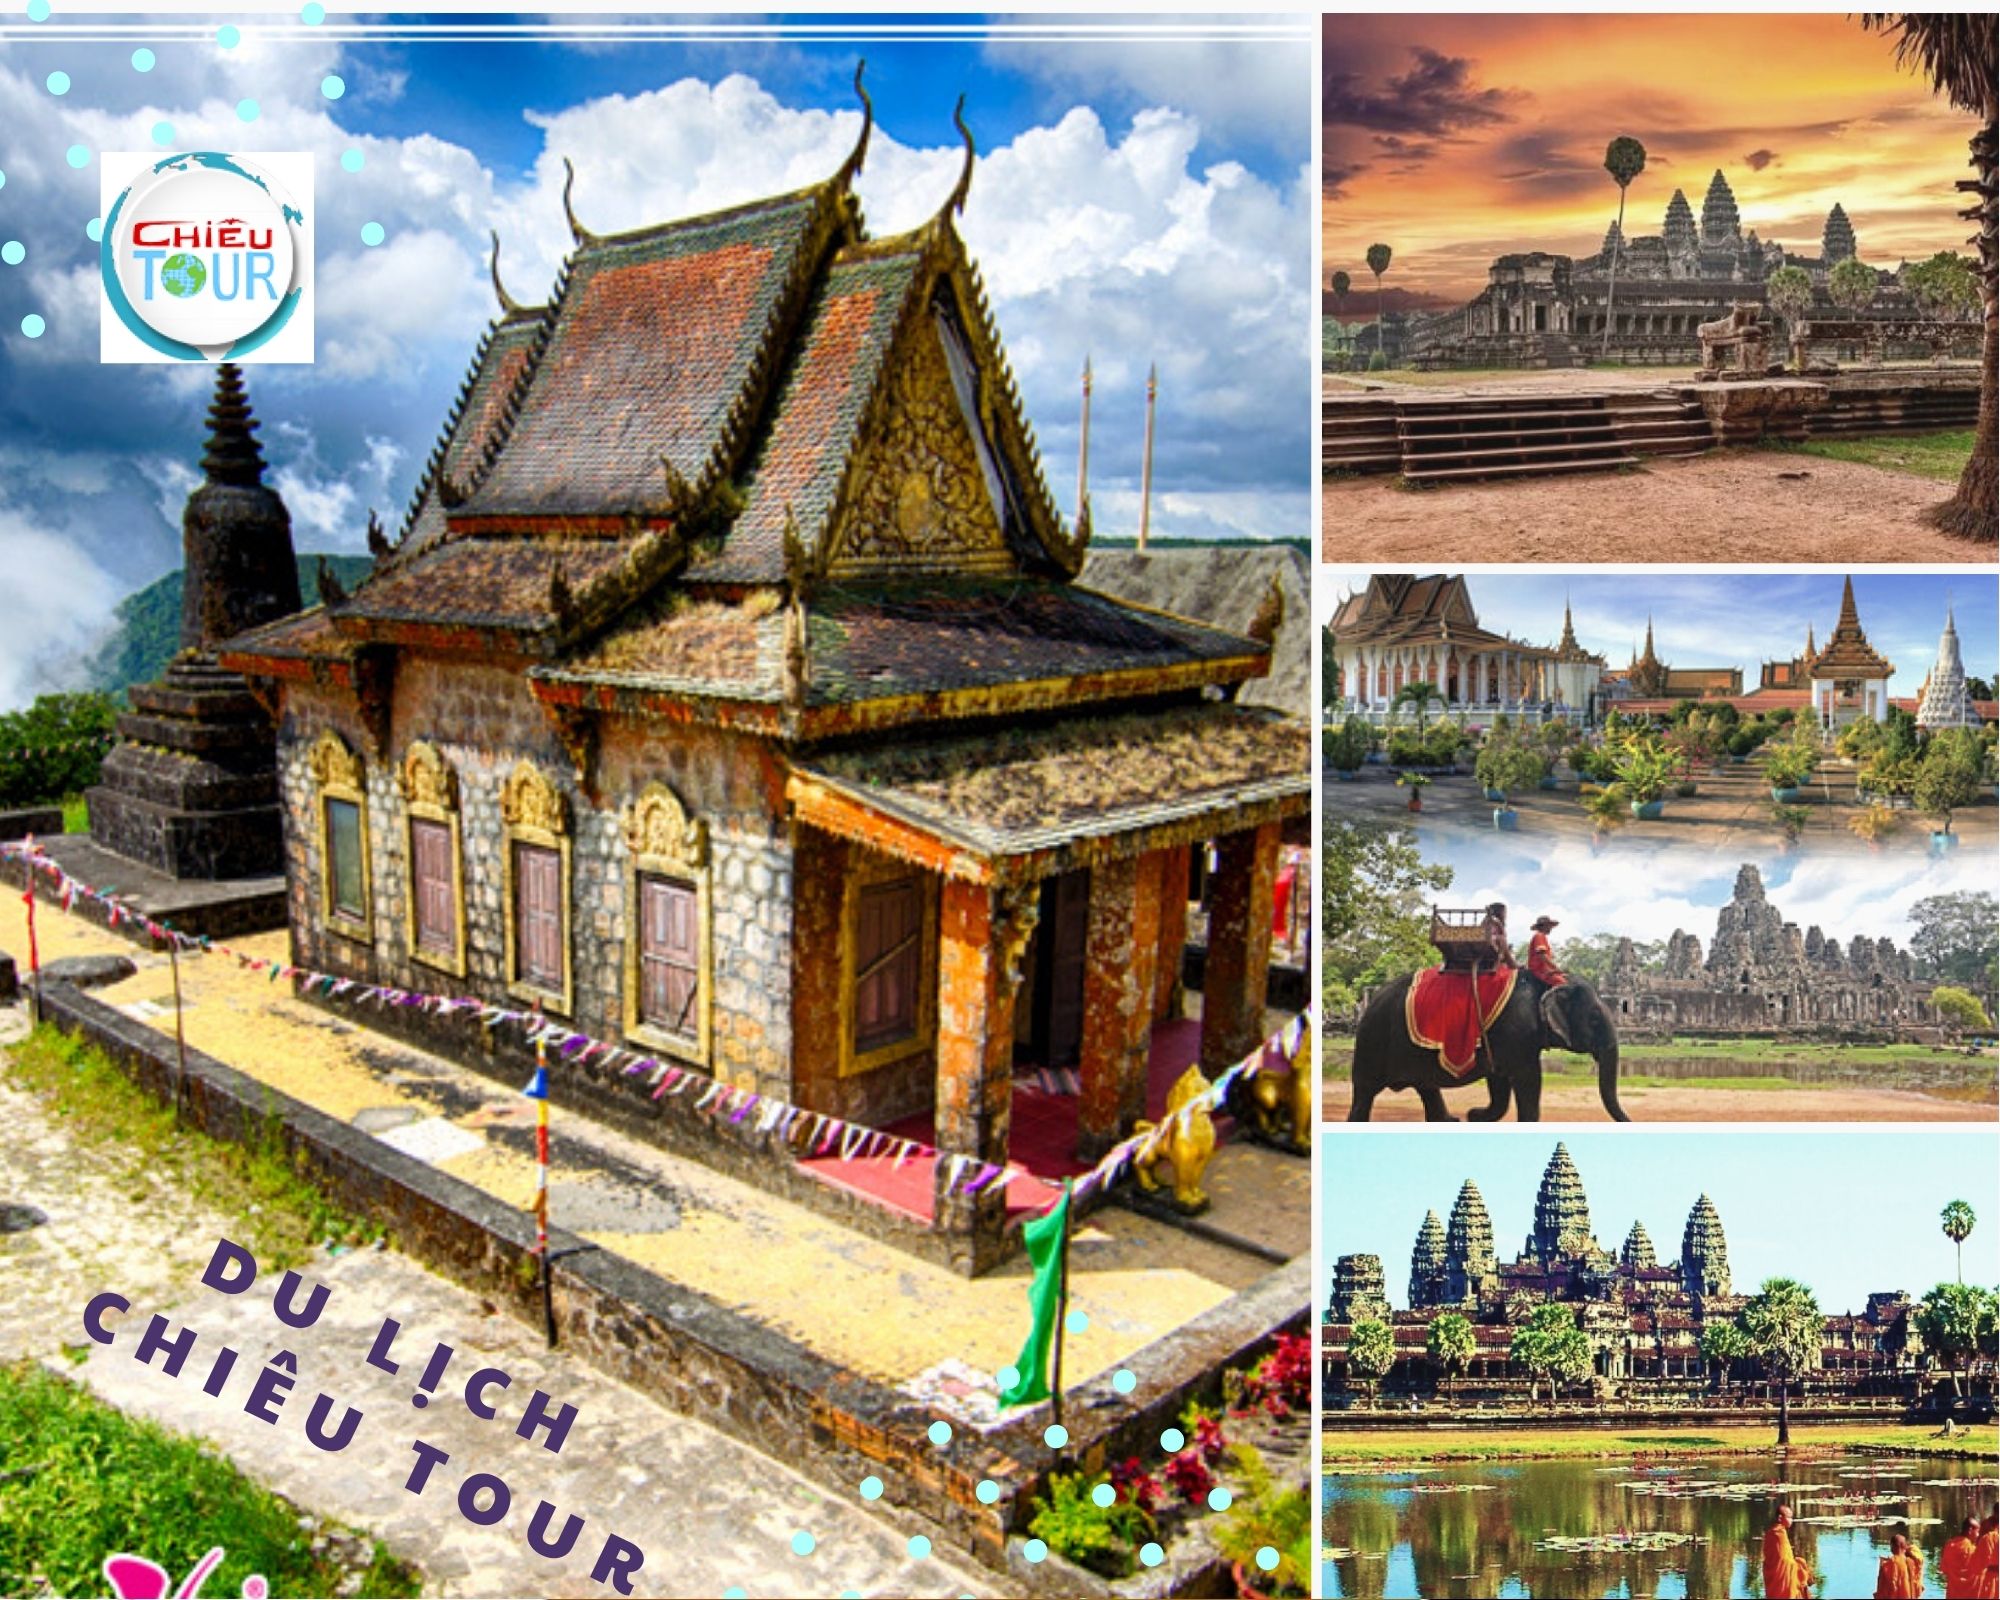 Tour du lịch Campuchia  Thái Lan bằng đường bộ